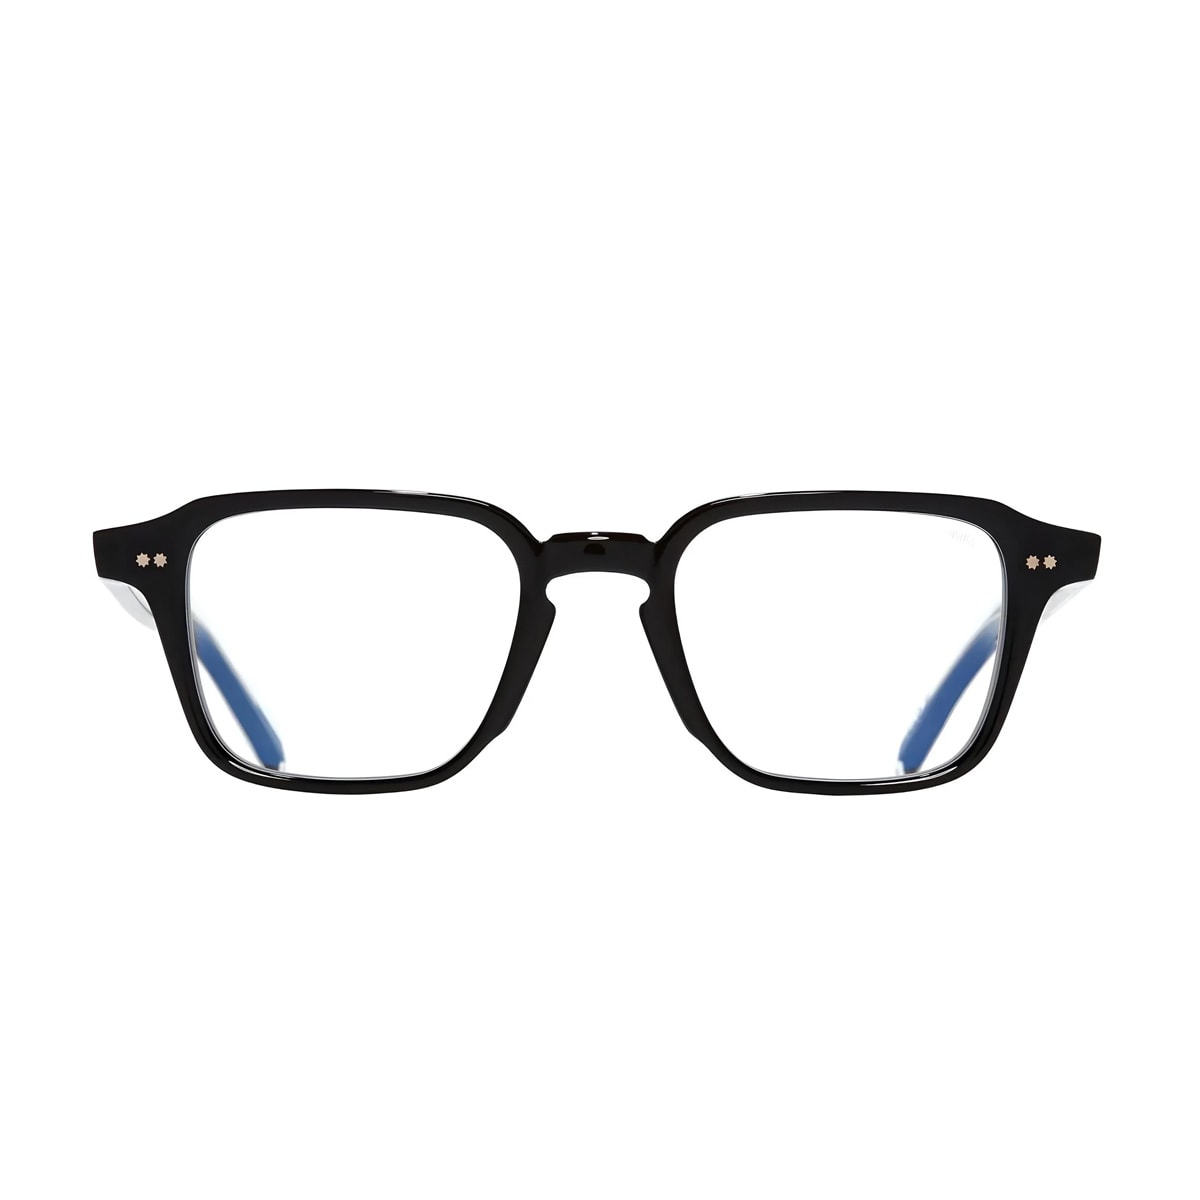 Gr07 01 Black Glasses